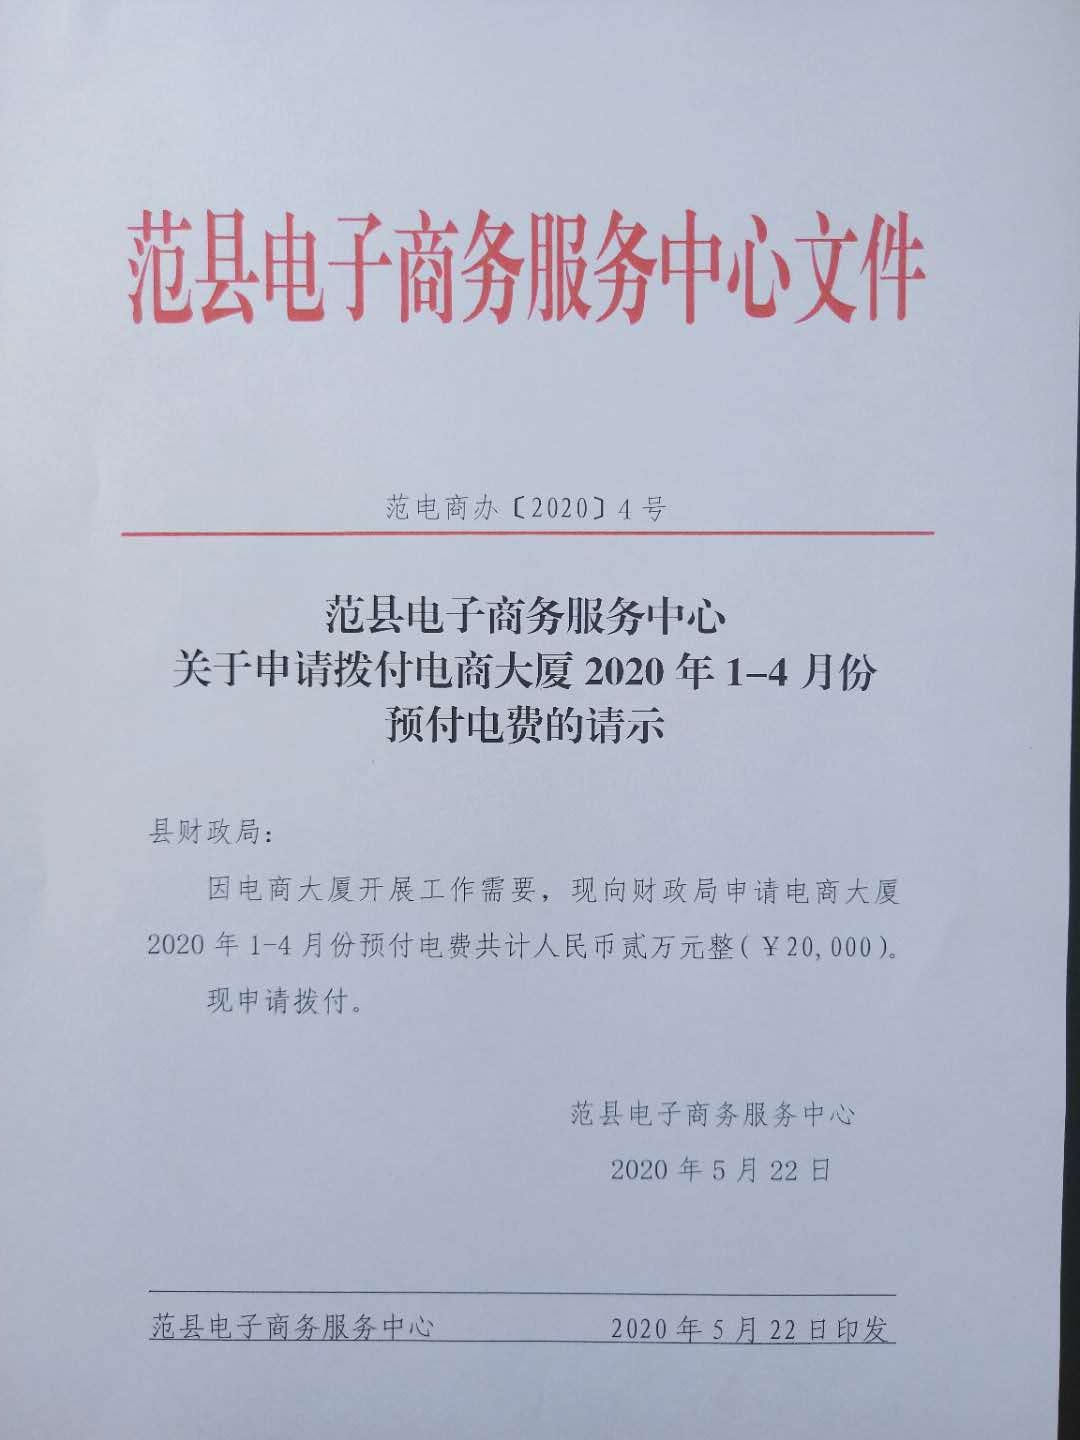 范县电子商务服务中心 关于申请拨付电商大厦2020年1